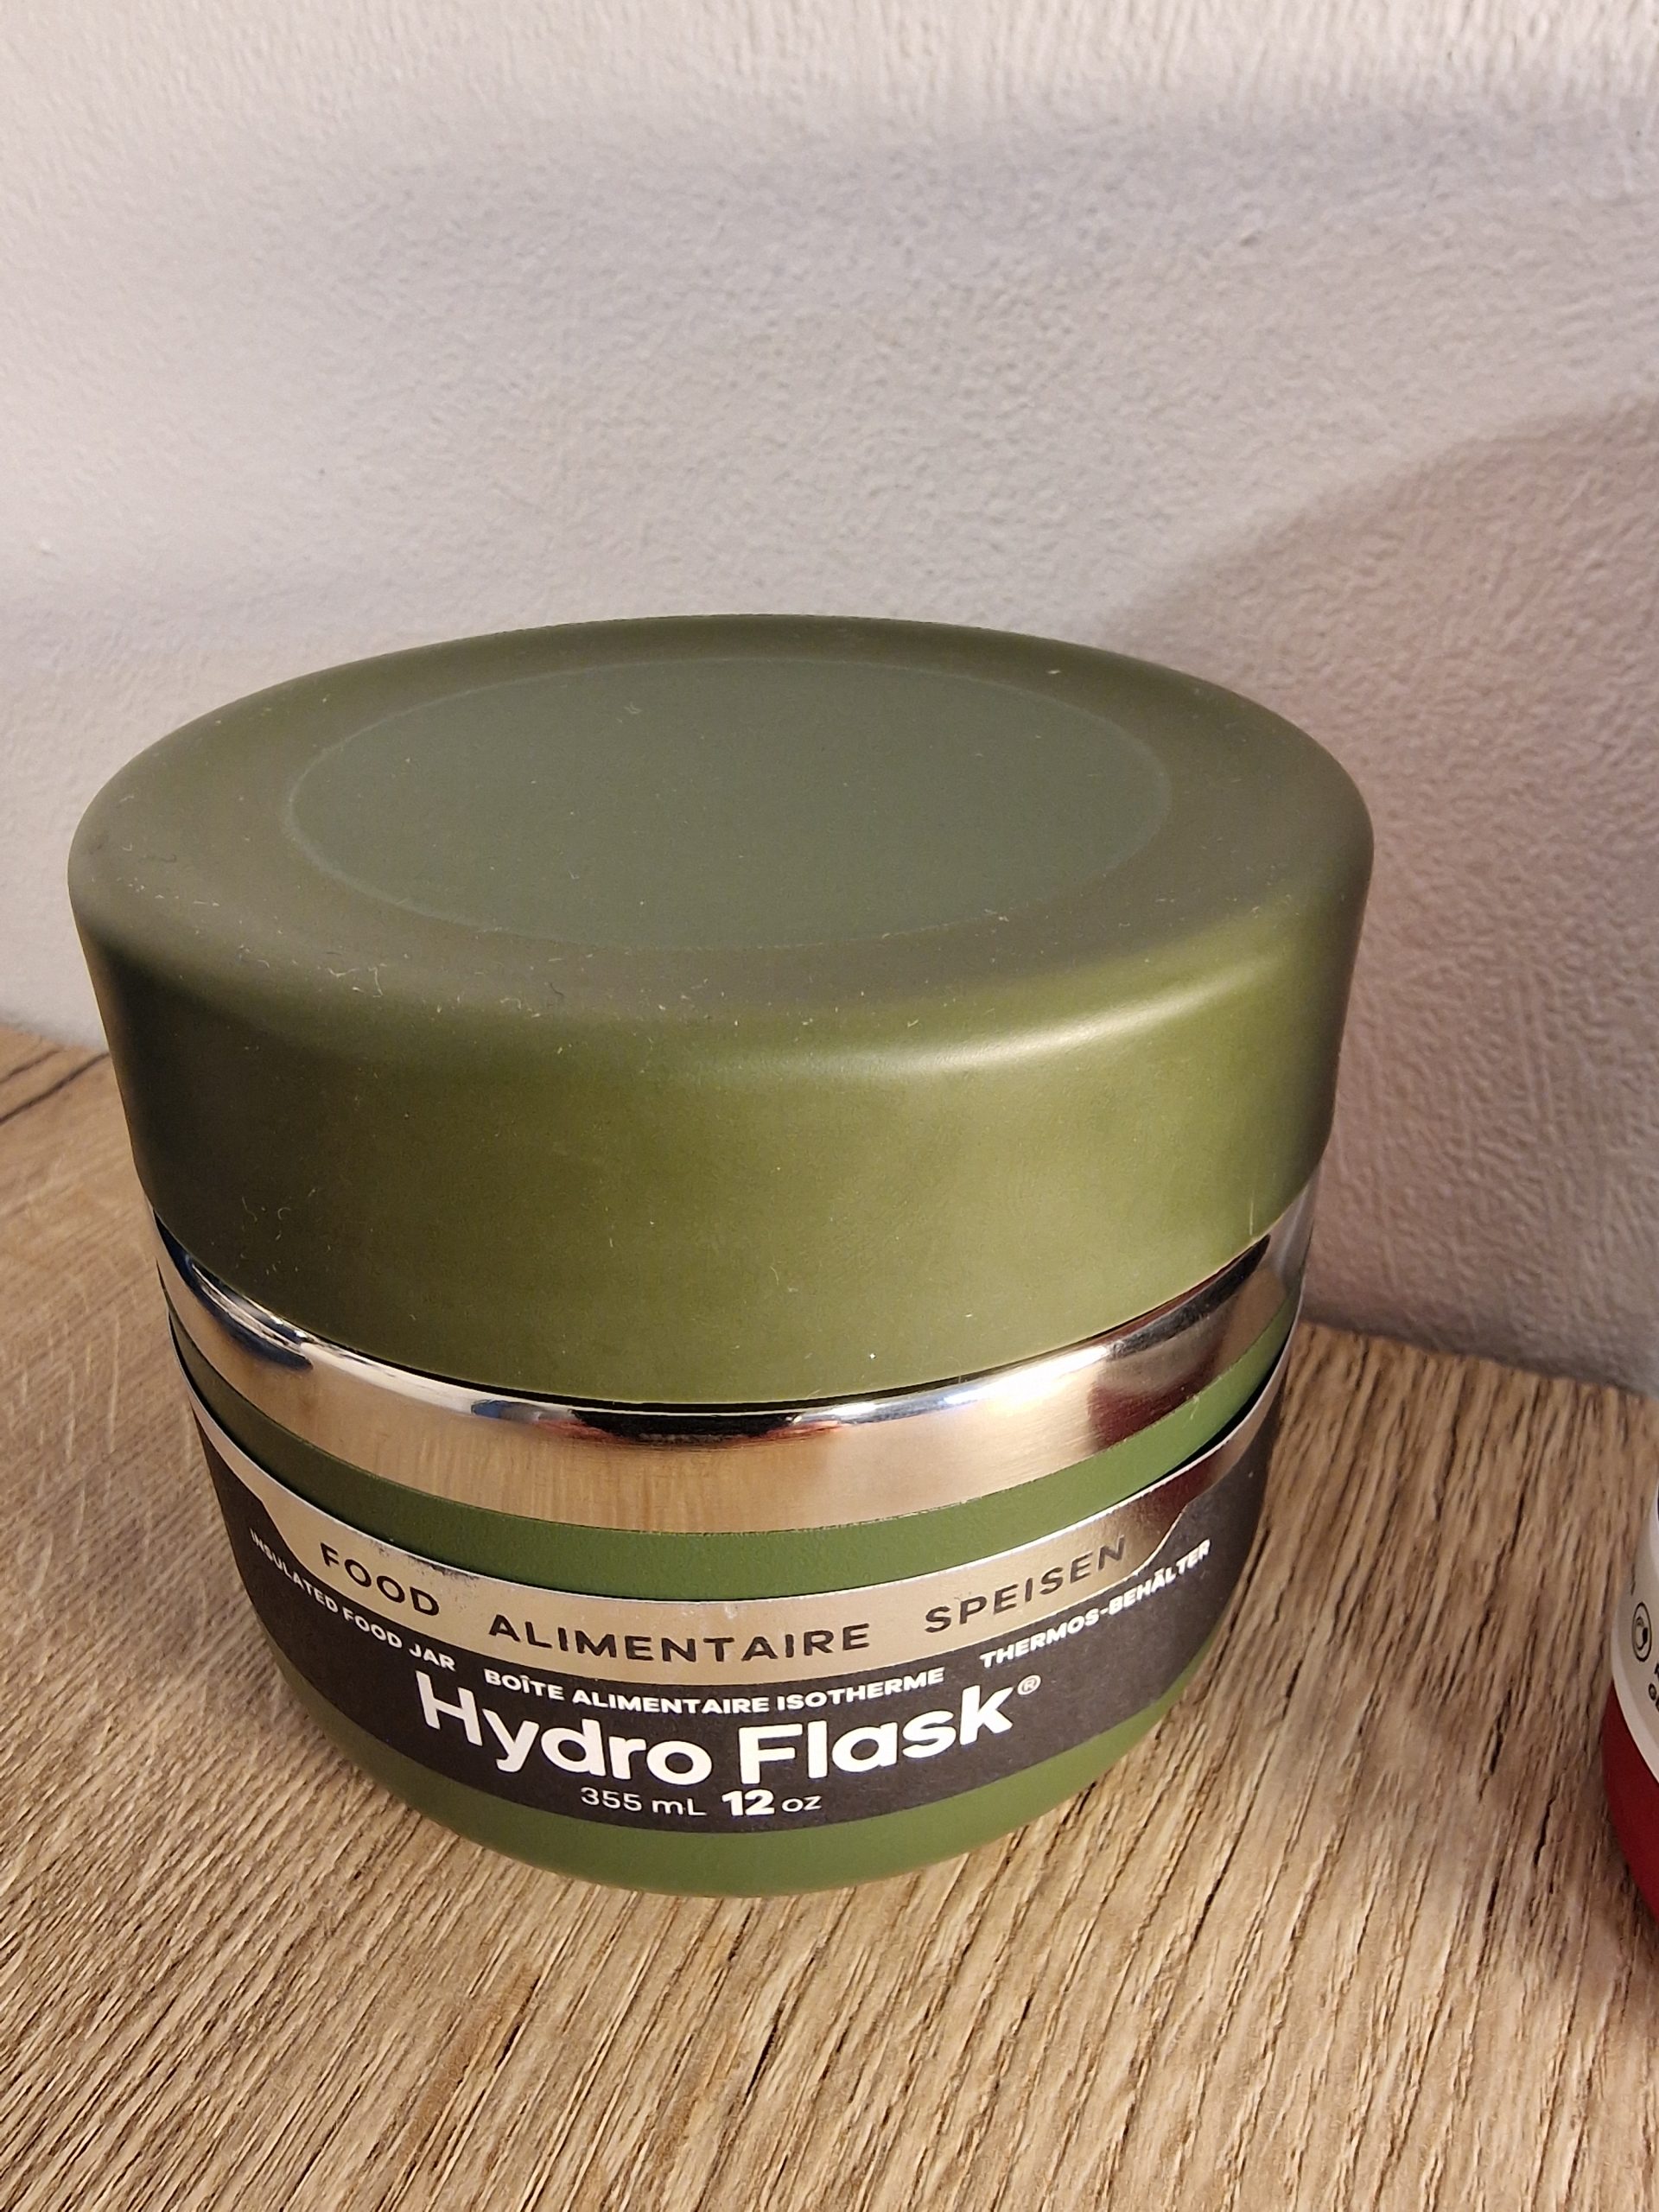 Thermobehälter für Essen: Hydro Flask Food Jar im Test